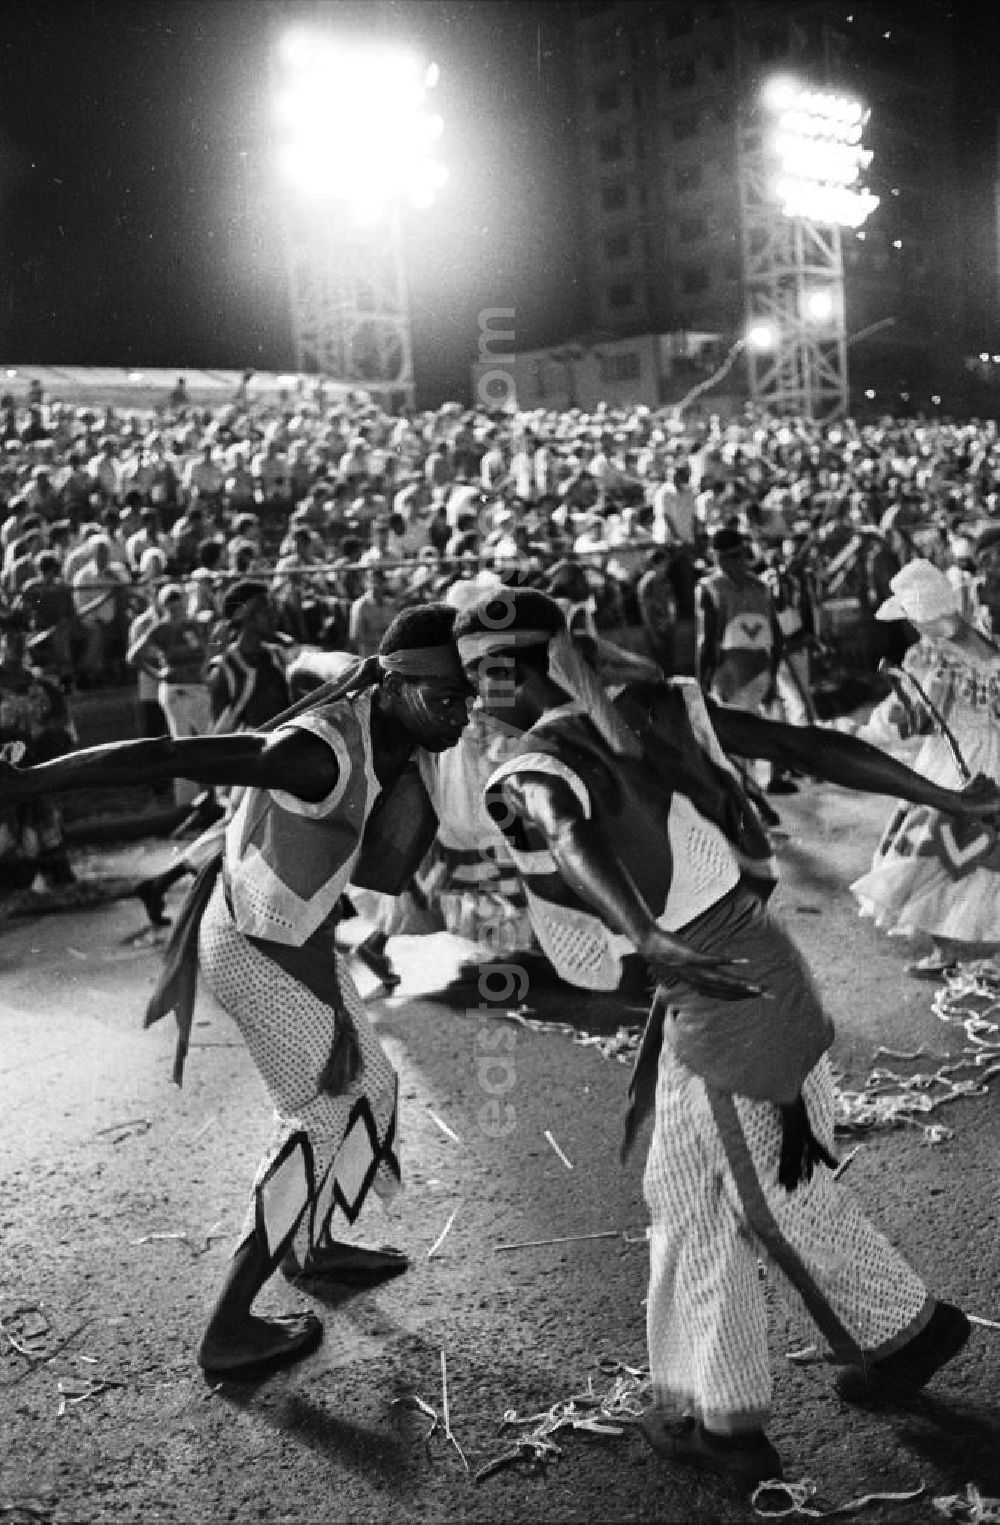 GDR picture archive: Havanna - Karneval während der XI. Weltfestspiele der Jugend und Studenten vom 28.07. - 05.08.1978. Im Fokus zwei Tänzer, die einander umkreisen. Im Hintergrund: vollbesetzte Zuschauertribünen. Karneval hat auf Kuba eine lange Tradition, besonders in Santiago de Cuba. Er verschmilzt karibische, brasilianische und afrikanische Einflüsse. Die Weltfestspiele standen unter dem Motto: Für antiimperialistische Solidarität, Frieden und Freundschaft. 18.500 Jugendliche aus 145 Ländern nahmen teil, darunter 20